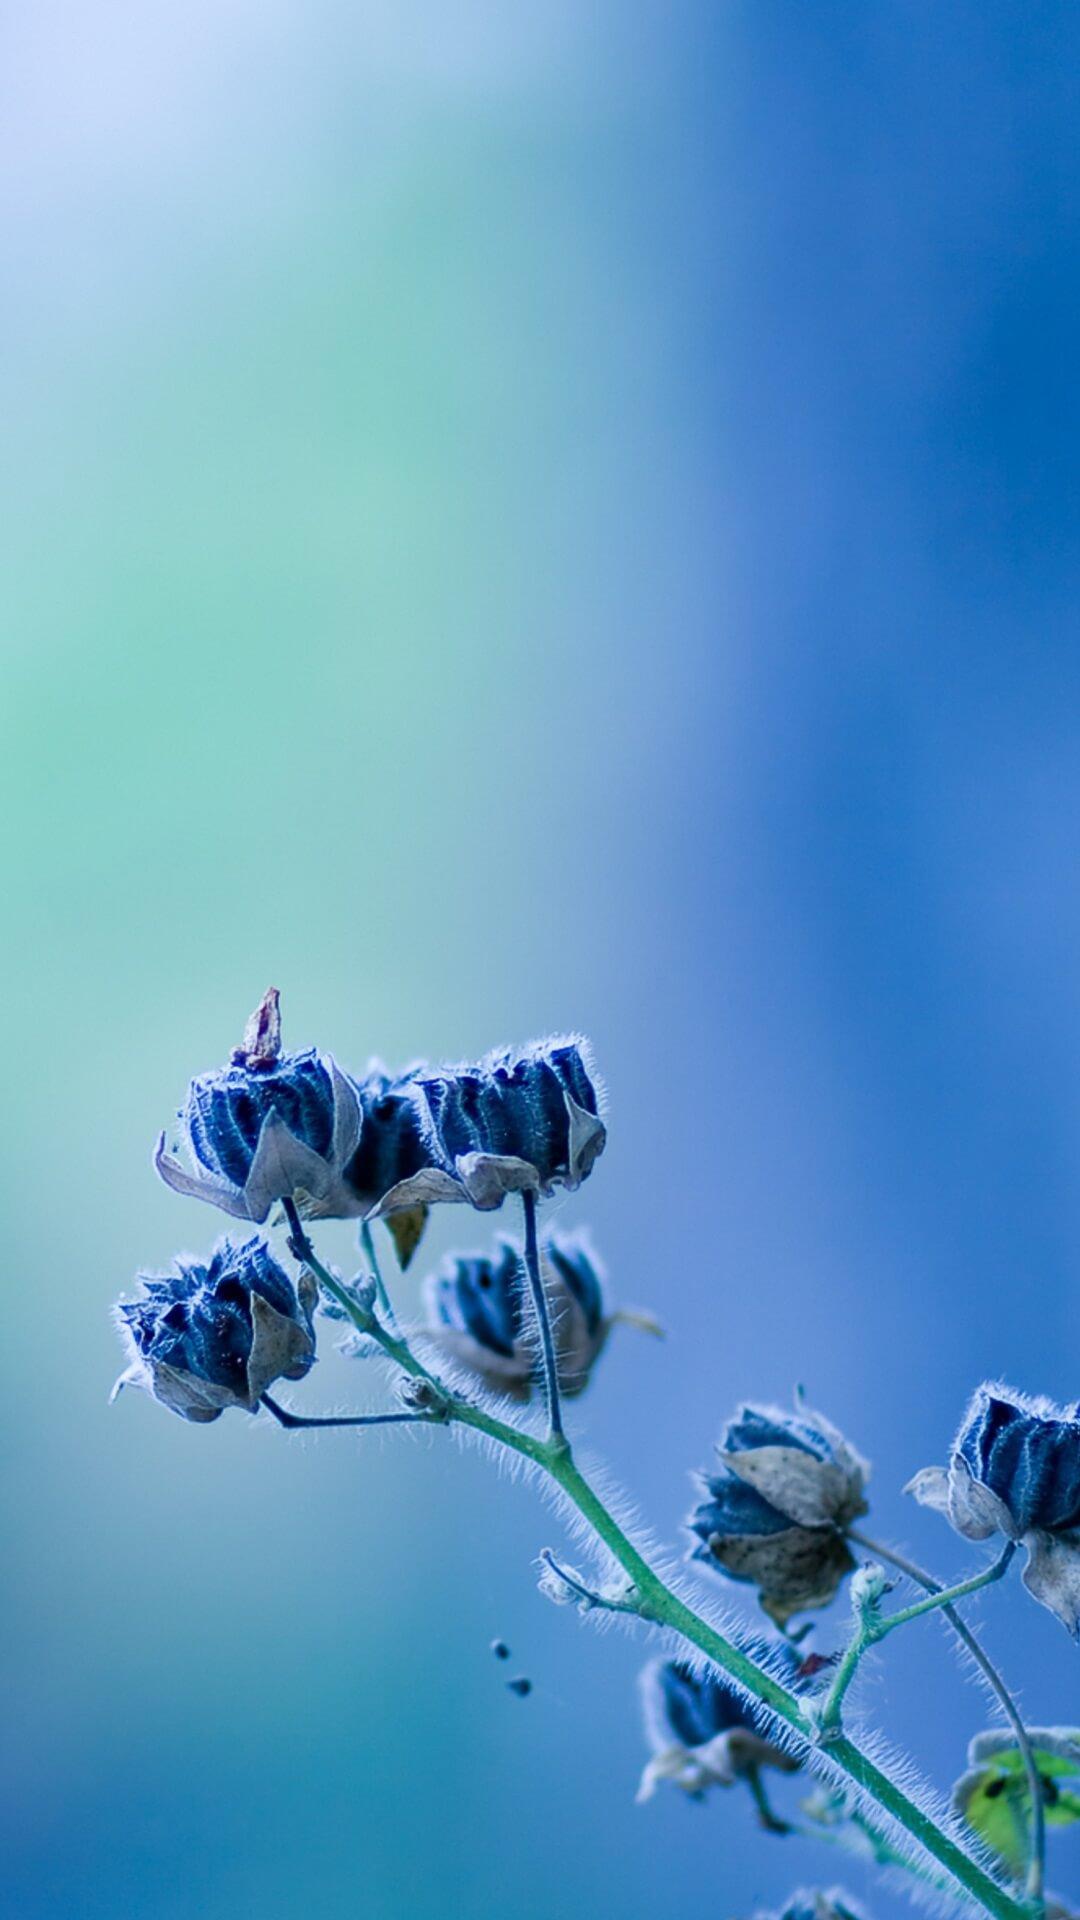 Wallpaper Biru Muda Bunga - WALLPAPERS